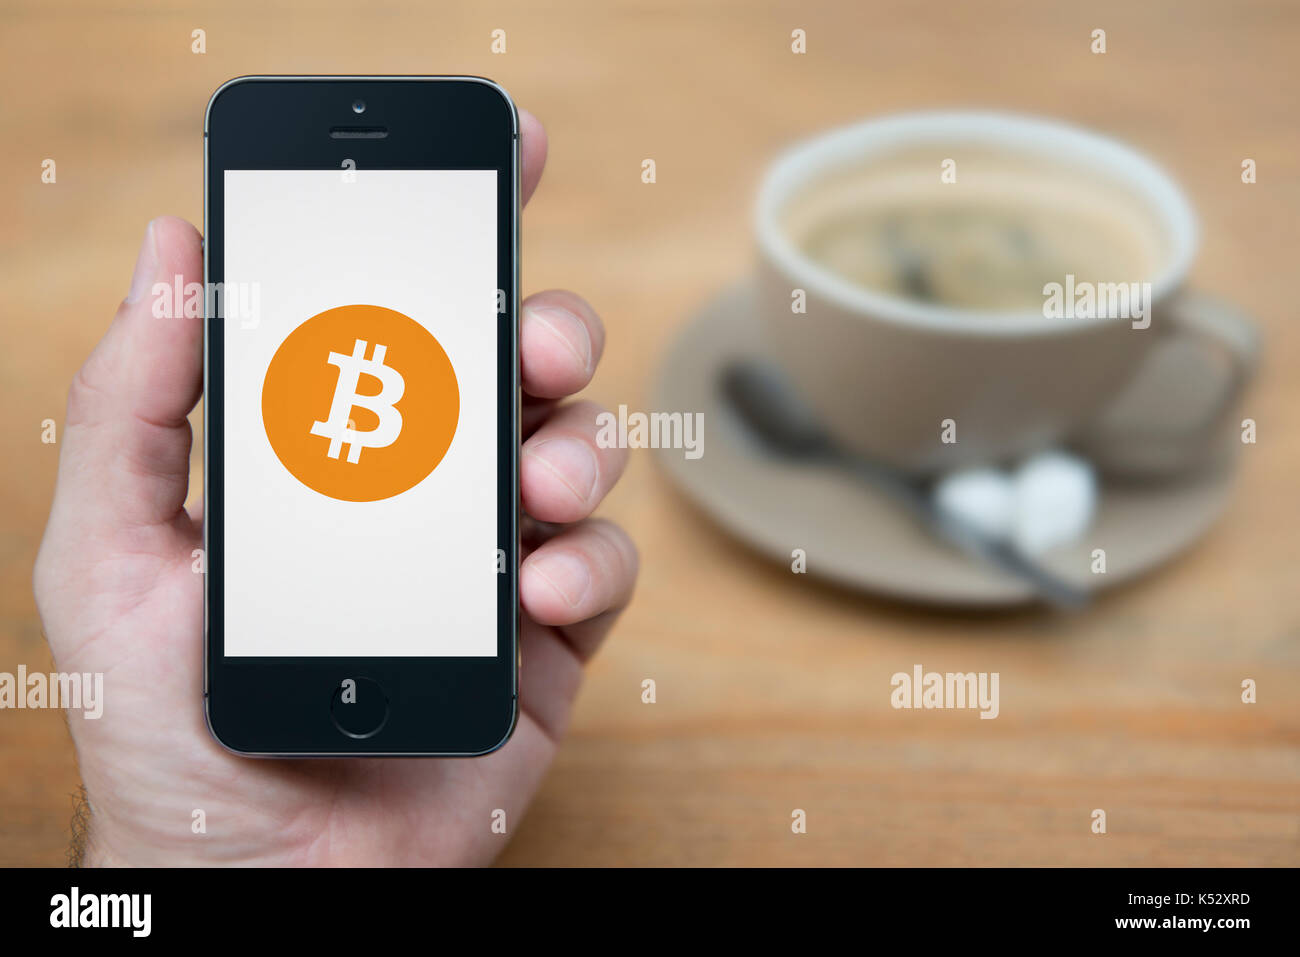 Un homme se penche sur son iPhone qui affiche le logo Bitcoin (usage éditorial uniquement). Banque D'Images